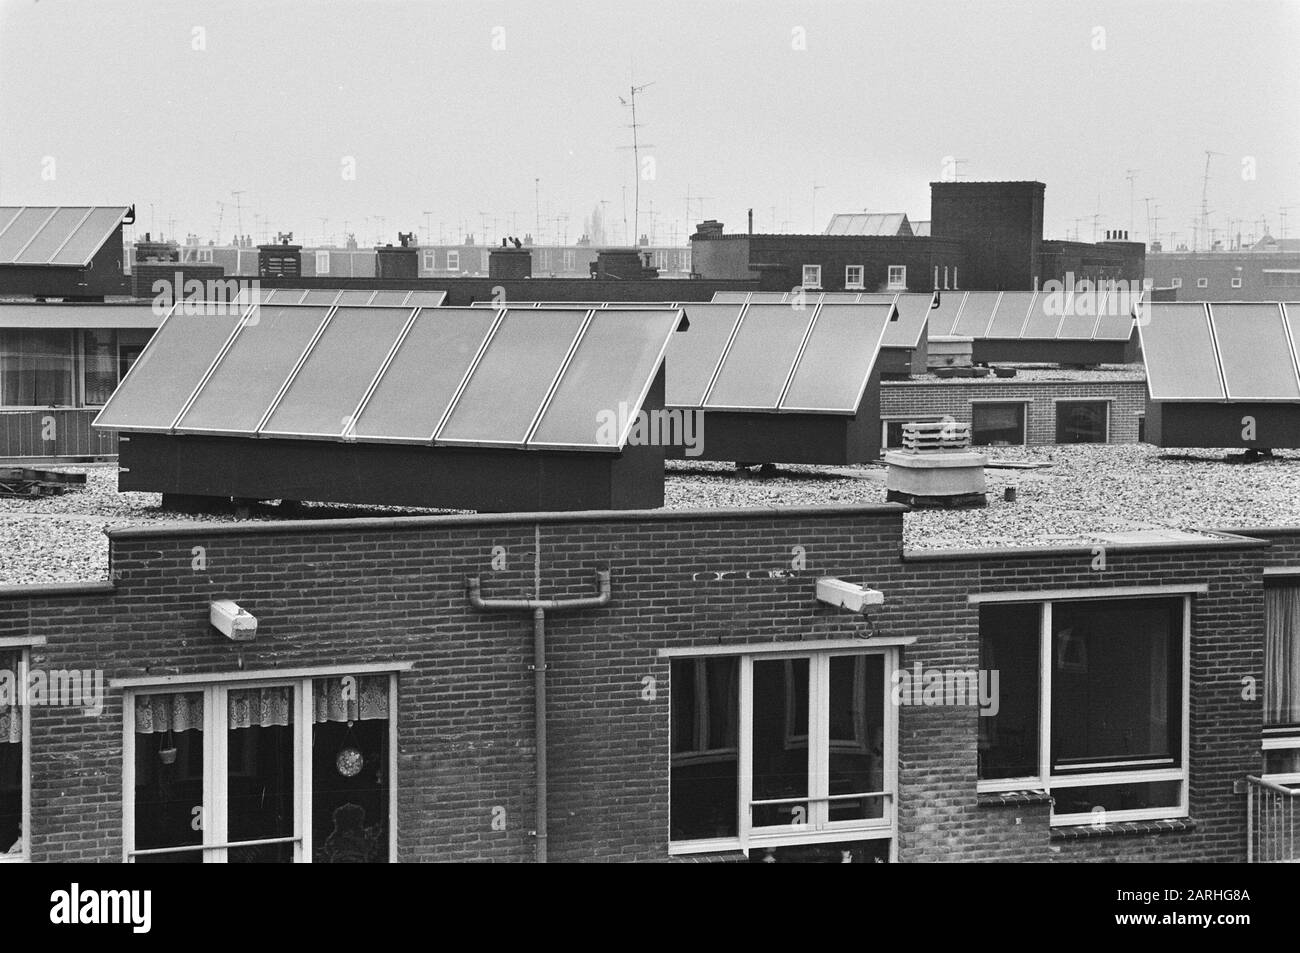 Chaudières solaires sur les toits de la nouvelle construction à Formosastraat comme essai et équipées de 34 chauffe-eau les maisons de l'eau chaude Date: 24 février 1982 lieu: Amsterdam, Noord-Holland mots clés: Nouveau BÂTIMENT, chauffe-eau solaire Banque D'Images